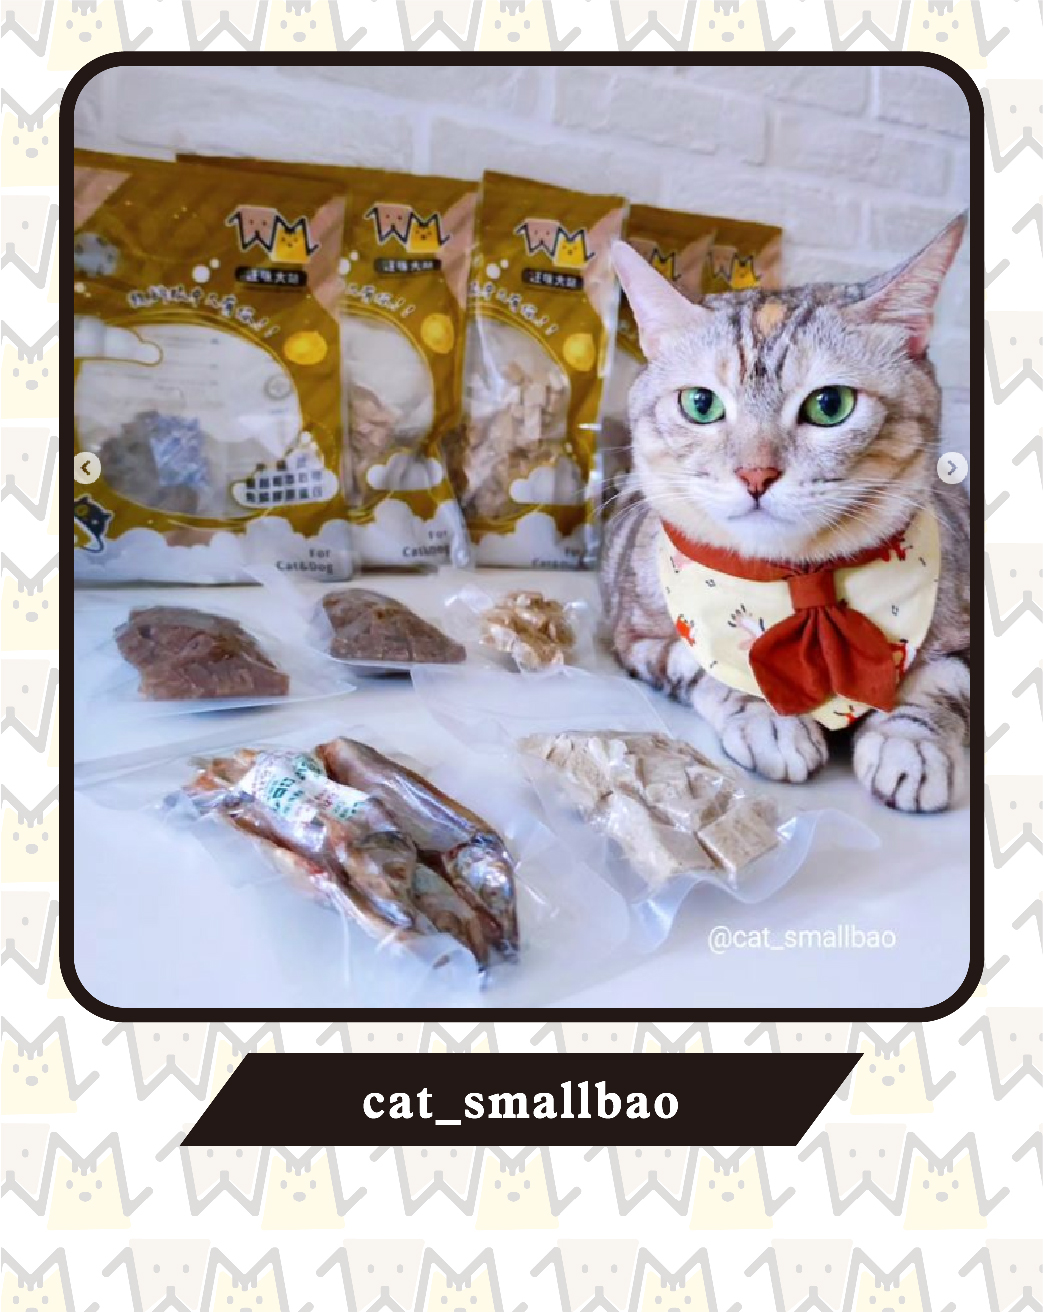 ｛部落客｝cat_smallbao (頂王小寶)強力推薦